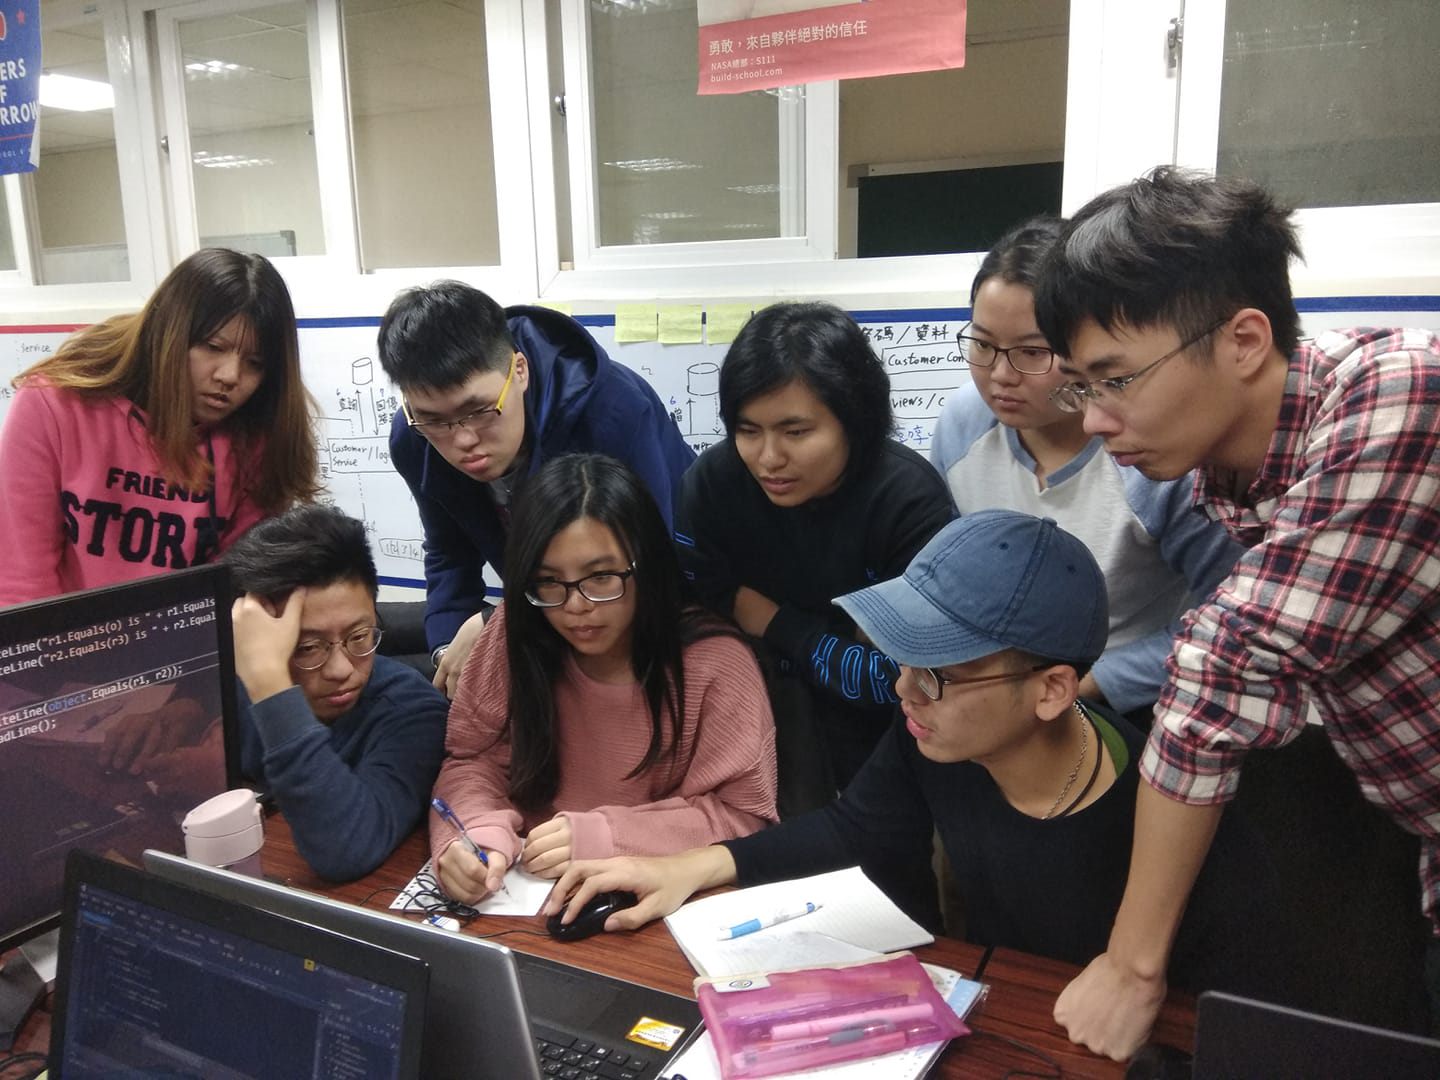 【新聞照片2】台灣微軟與Build School提供公益名額 協助伊甸、喜憨兒和失親兒基金會 學習數位新技